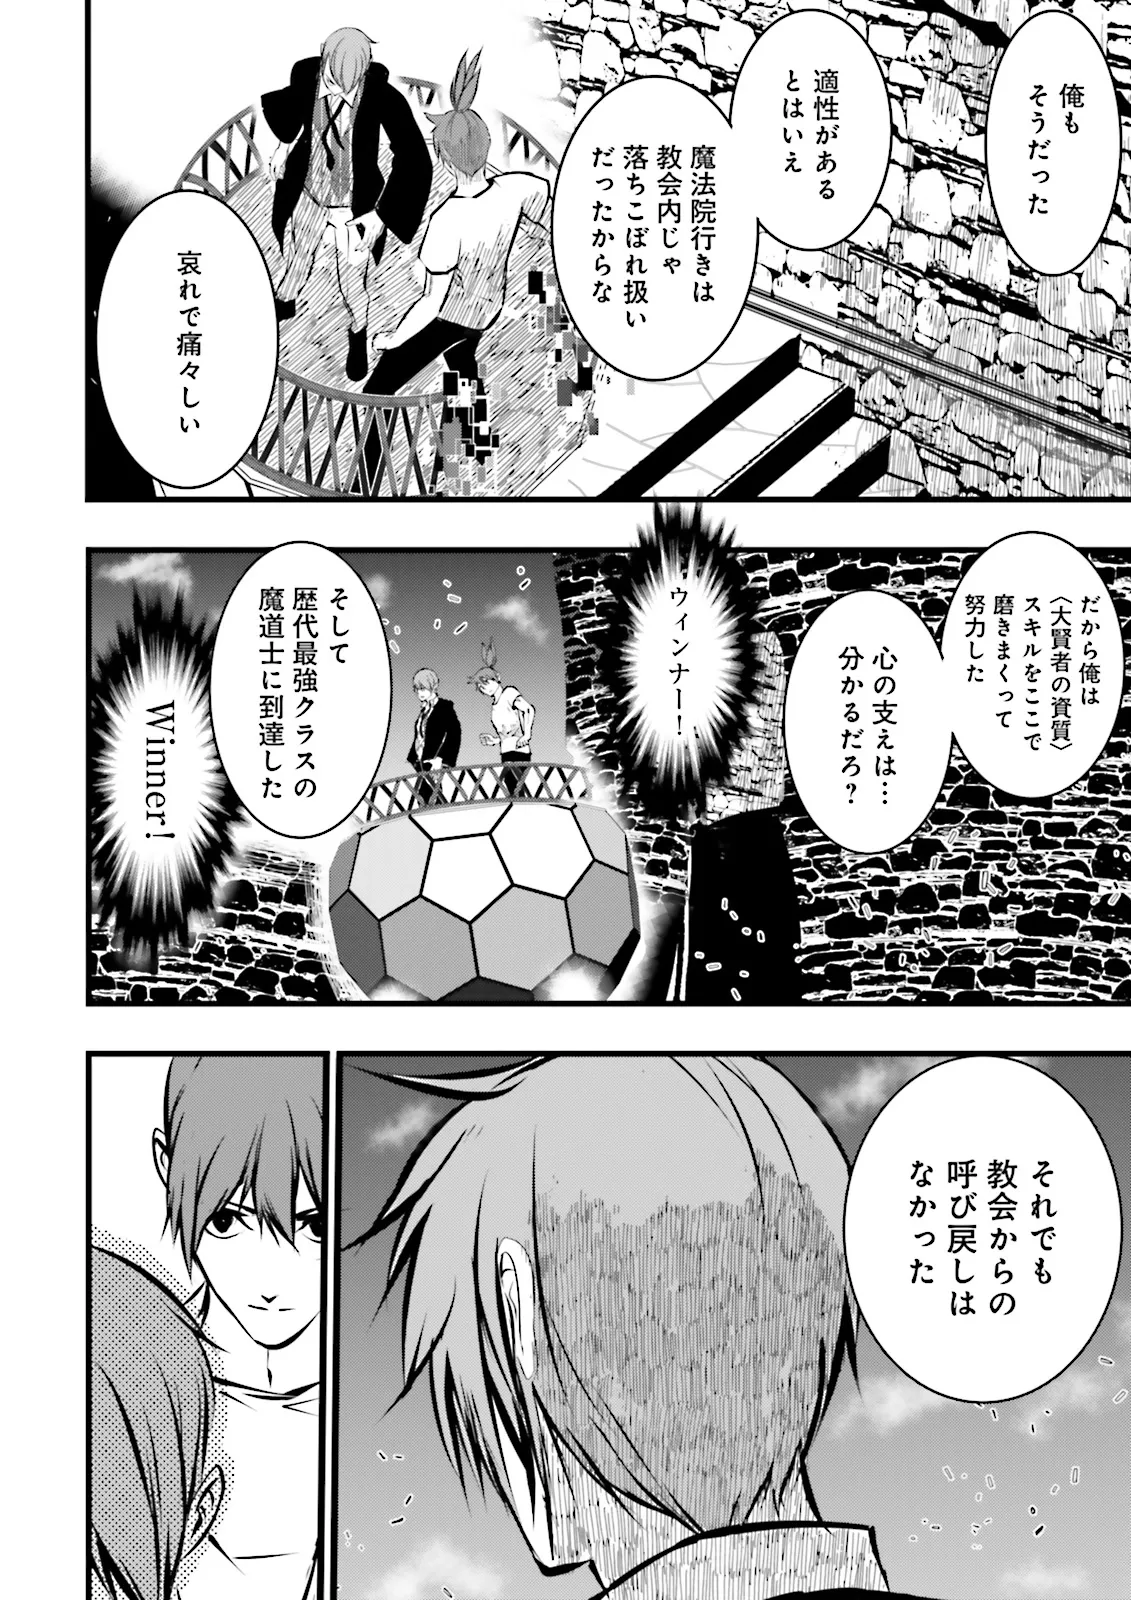 Sukiru Ga Nakereba Level wo Ageru ~ 99 Ga Kansuto No Sekai De Reberu 800 Man Kara Sutato ~ - Chapter 38.3 - Page 6